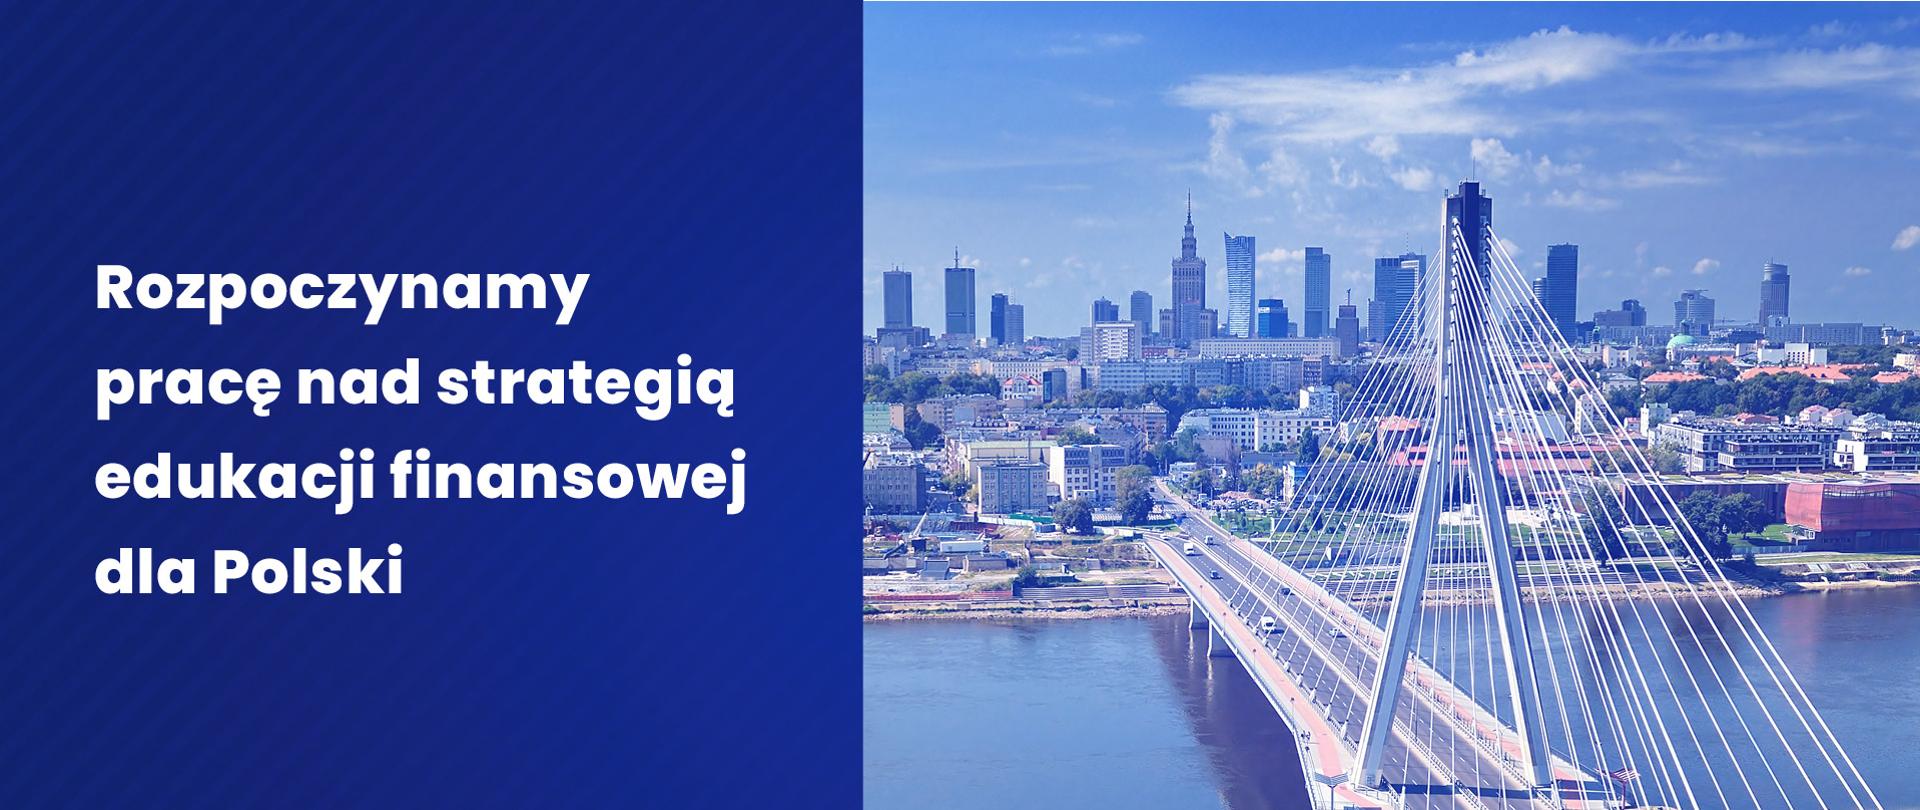 Rozpoczynamy pracę nad strategią edukacji finansowej dla Polski. Po prawej zdjęcie panoramy Warszawy, na pierwszym planie widok na Most Świętokrzyski